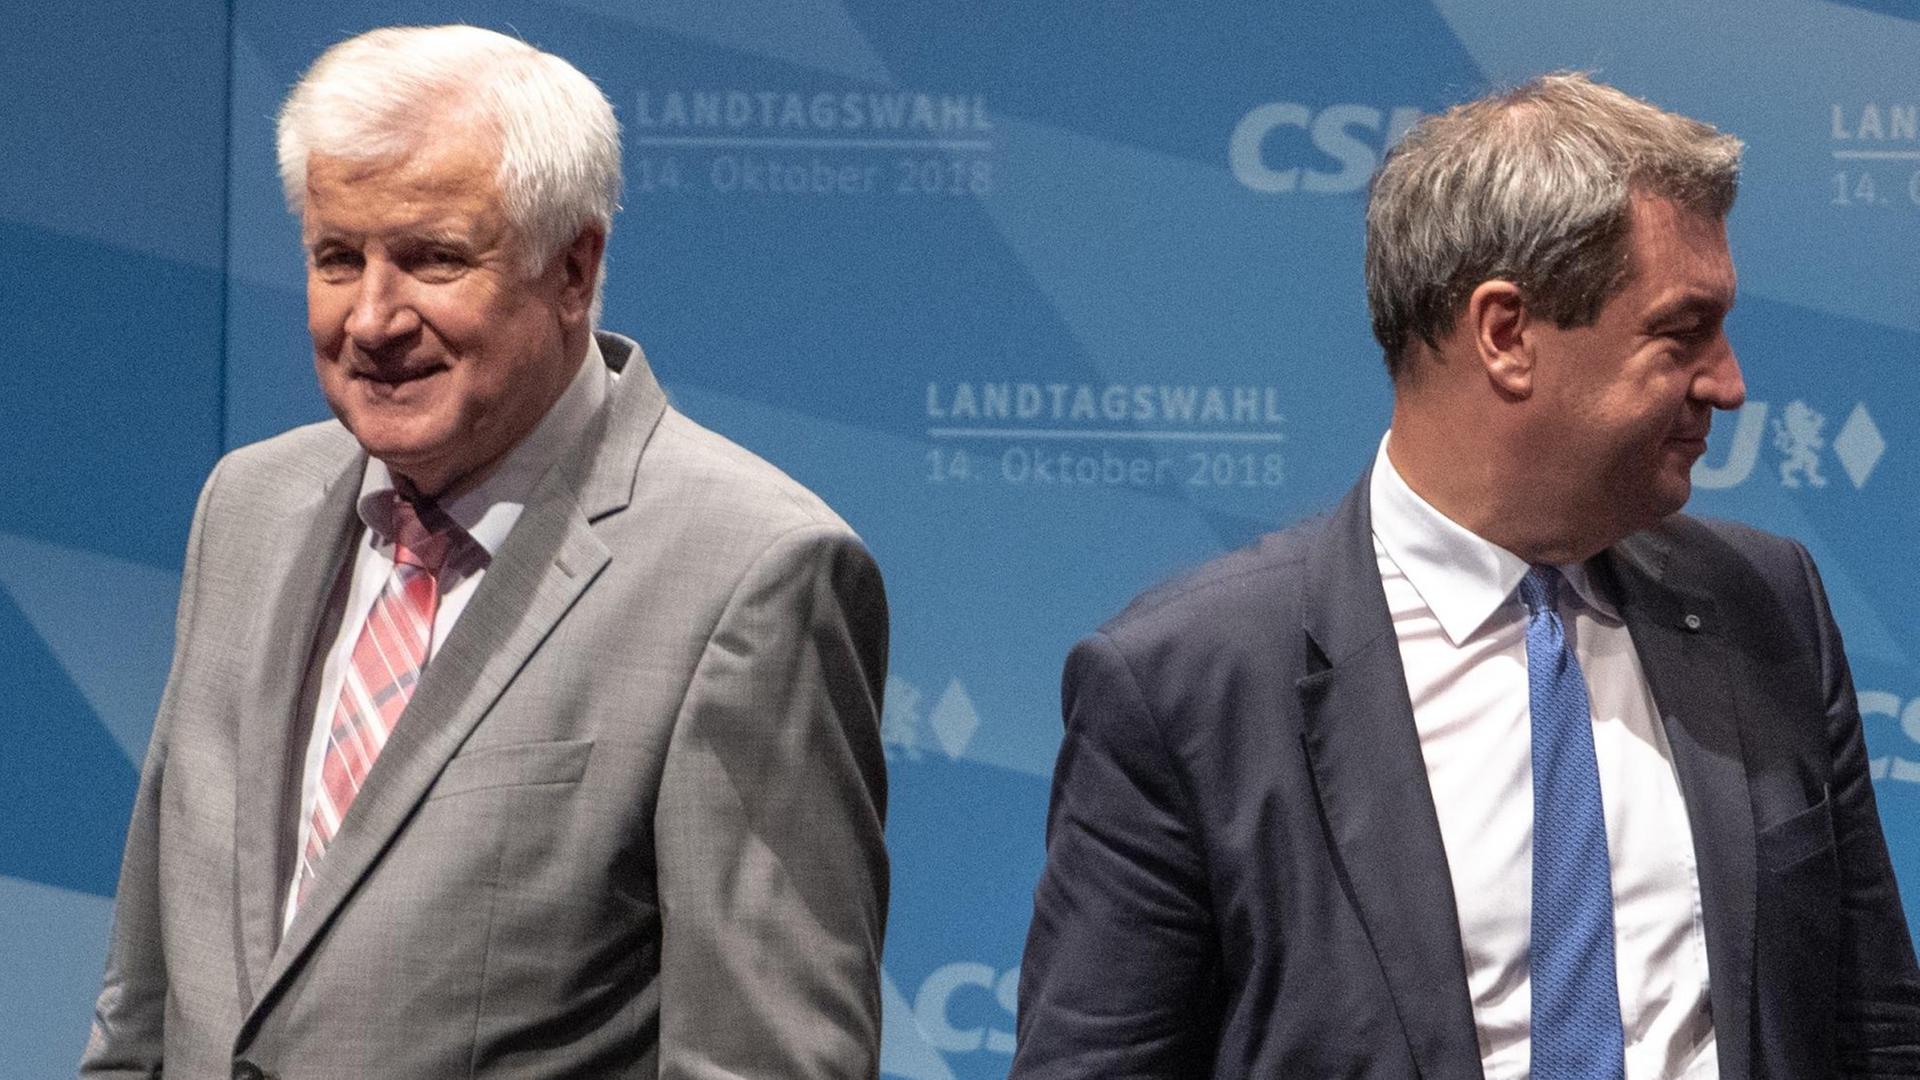 Bayern vor der Landtagswahl - CSU rüstet sich für historischen Absturz